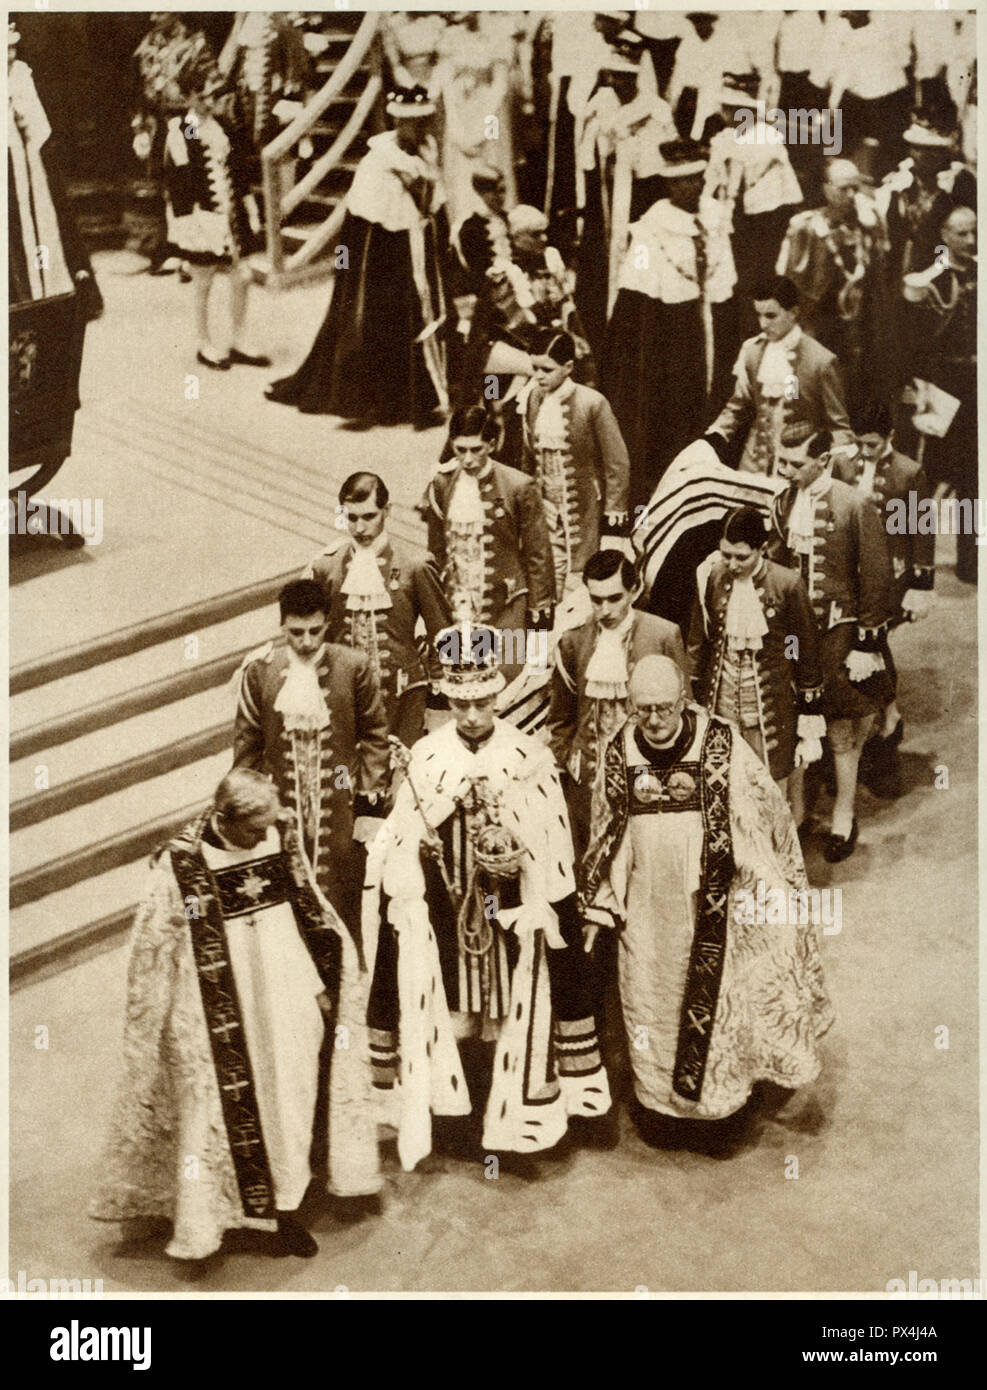 King George die sechste von Westminster Abbey am 12. Mai 1937 Übersicht der König trug seine Krönung Roben der Krone und der Reichsapfel und Zepter in einer Krönung Souvenir Buch veröffentlicht, die von der Daily Express vom 1937 veröffentlicht. Stockfoto